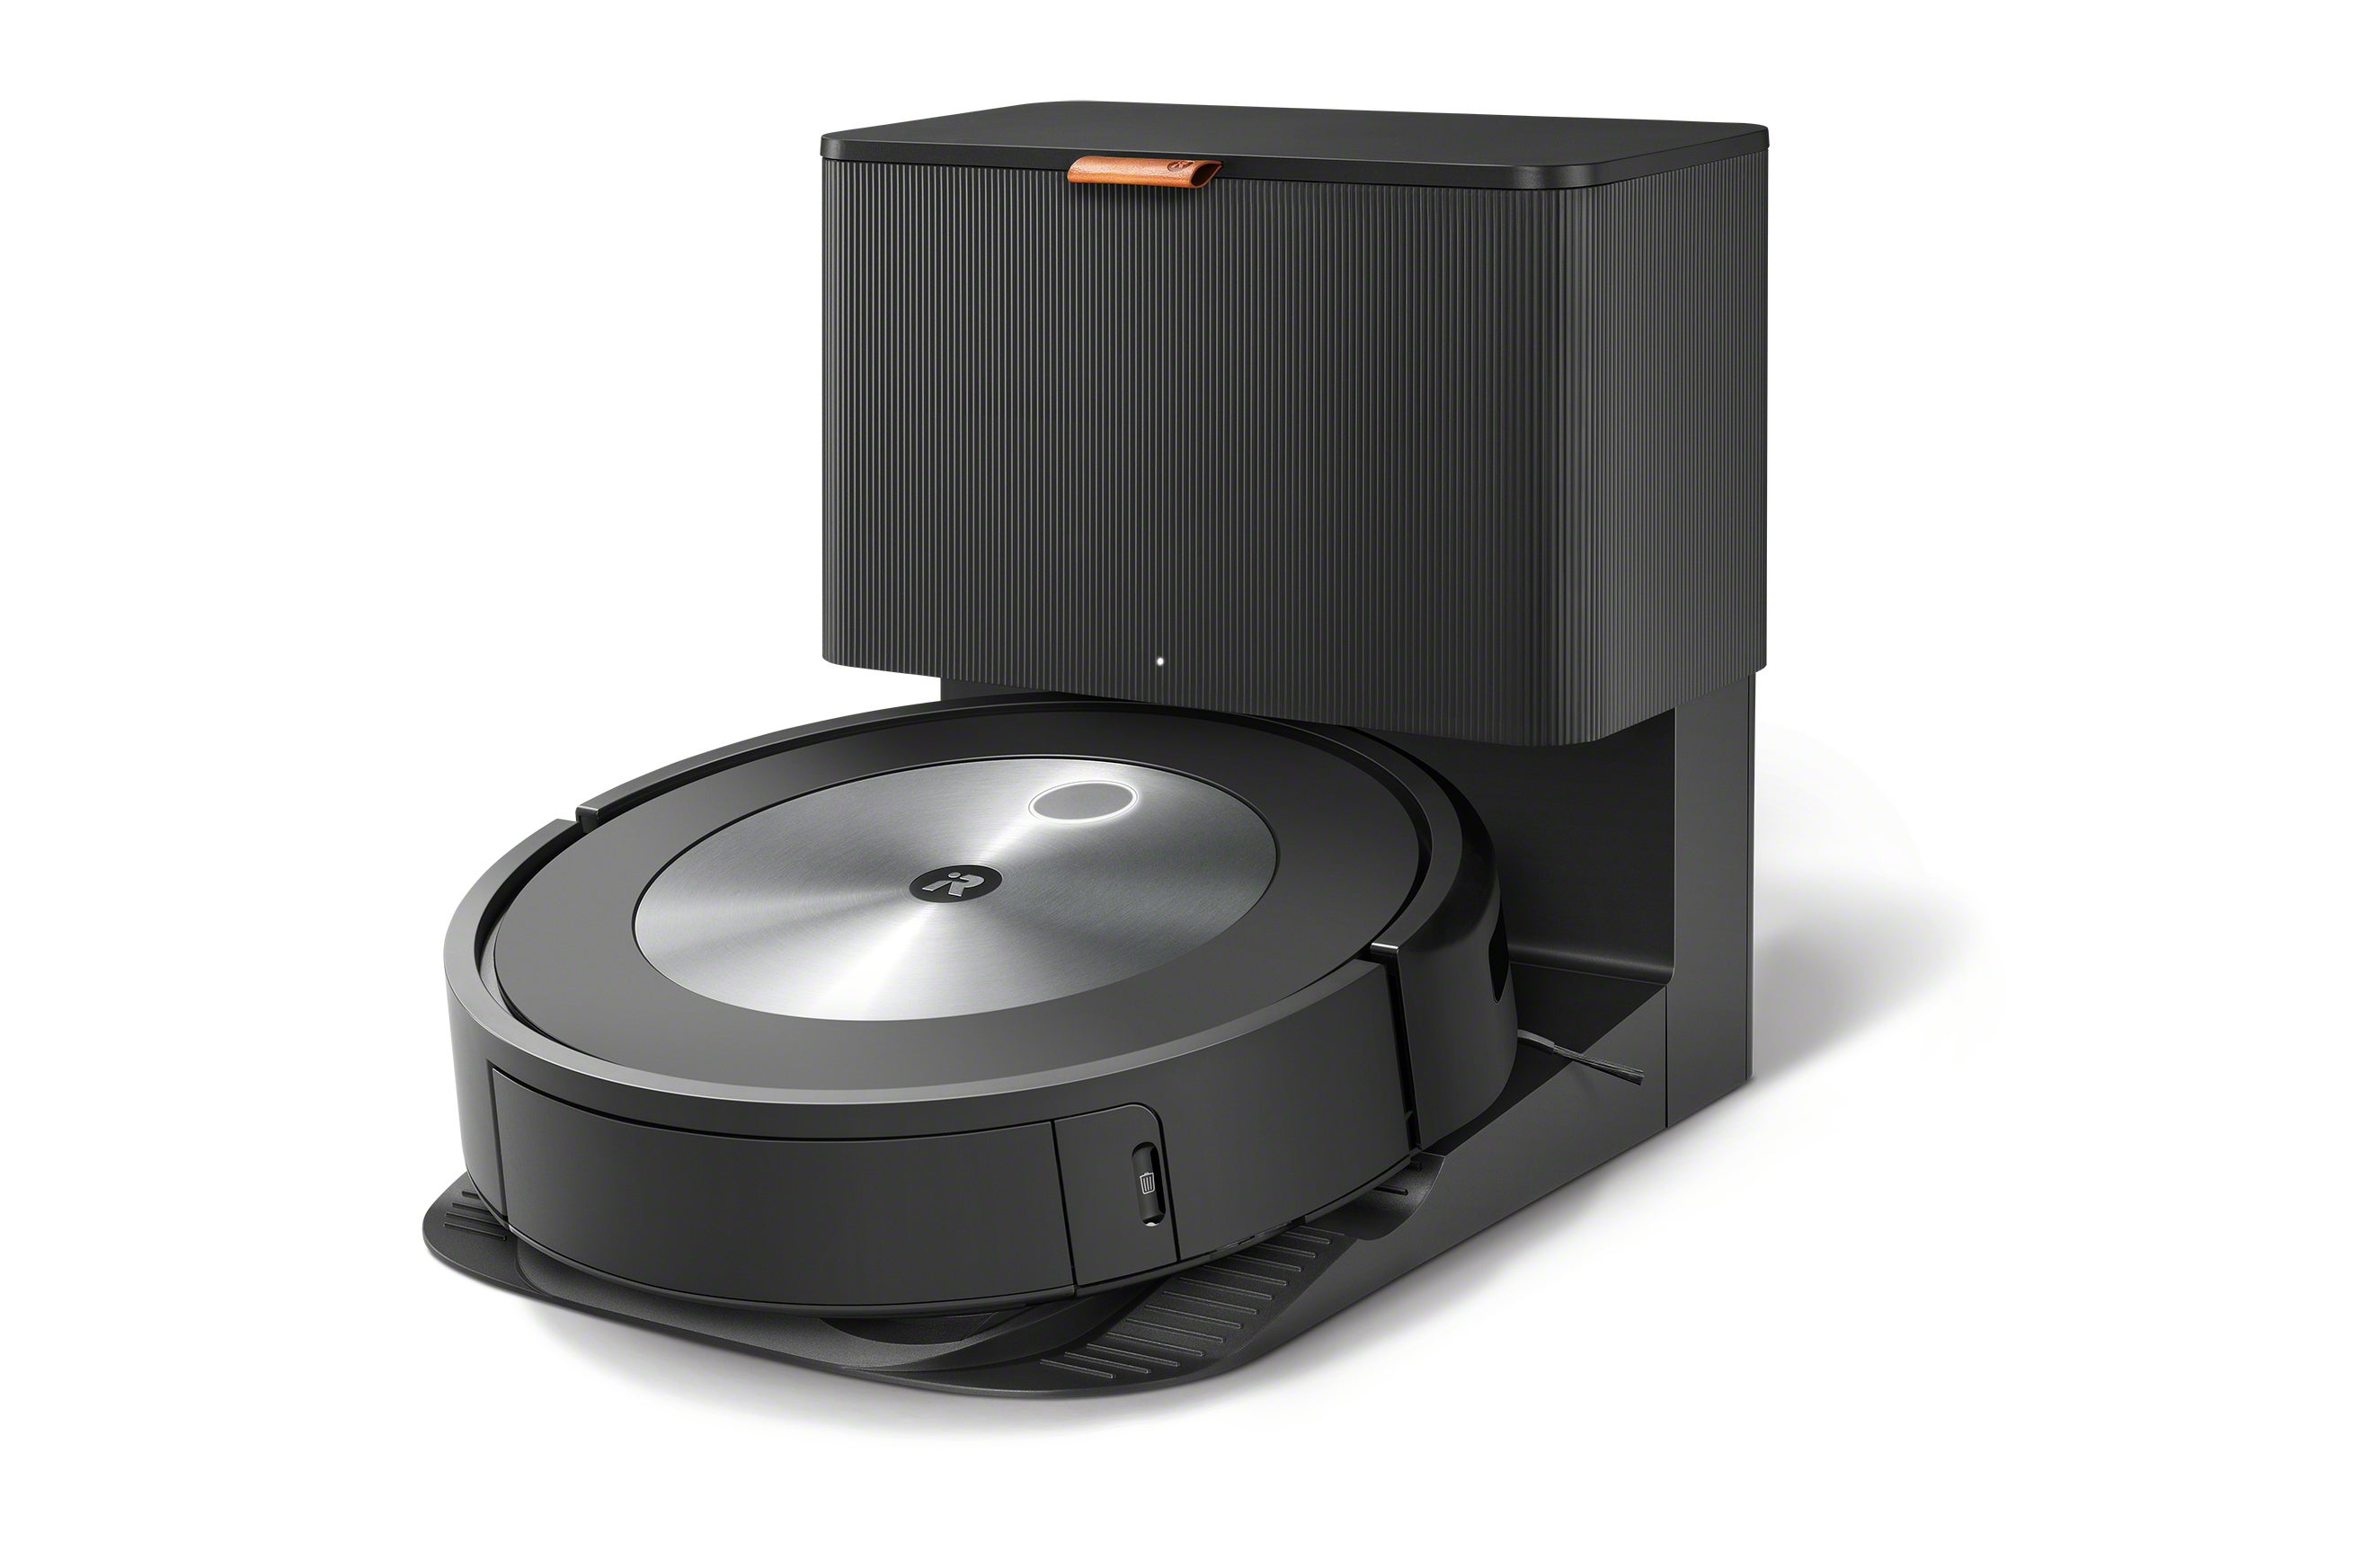 Best smart vacuum: iRobot Roomba j7+